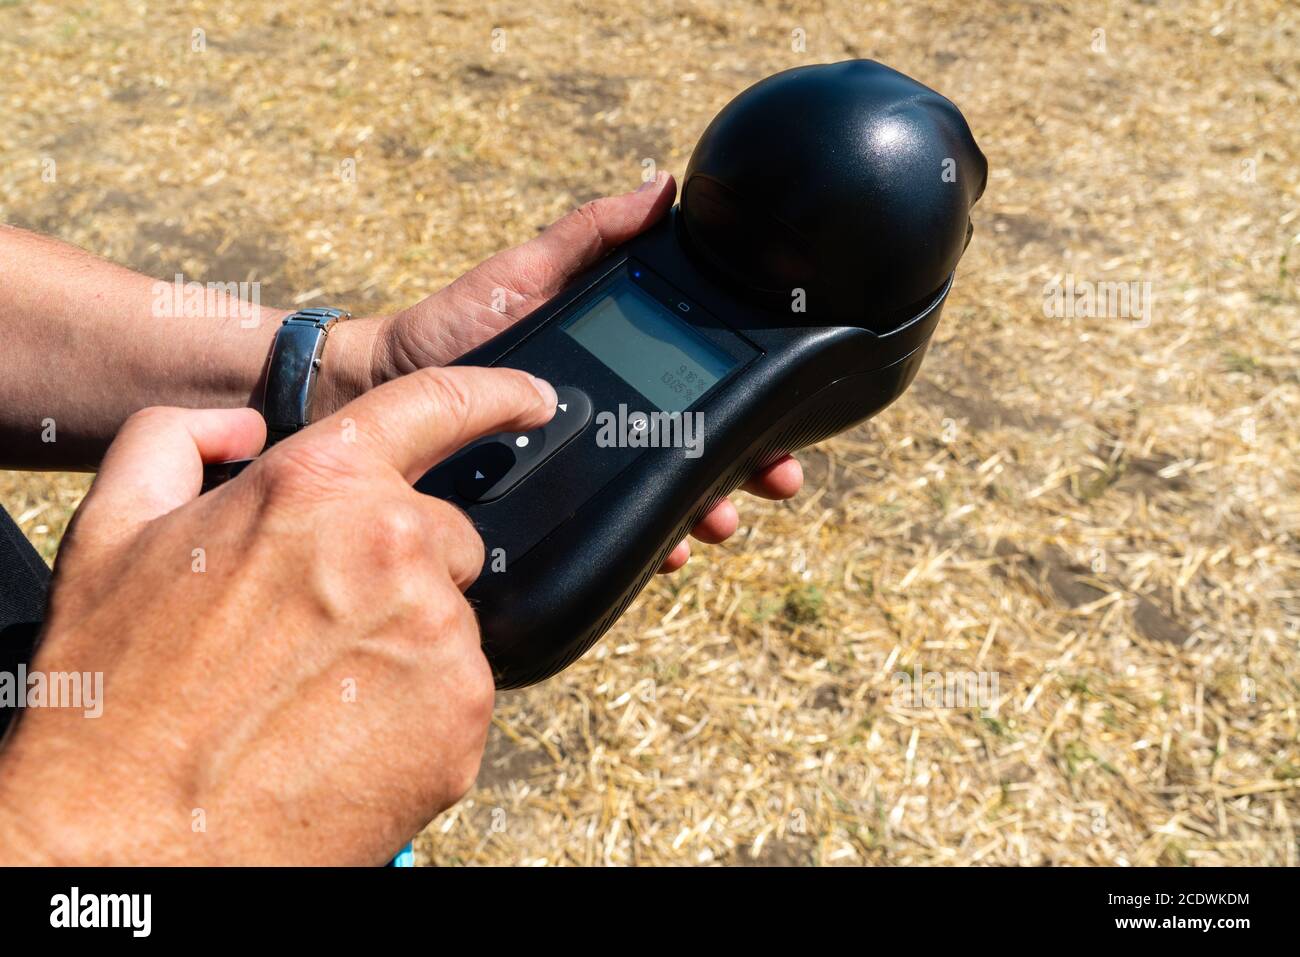 Mobiles Gerät zur Messung der Kornparameter in der Ernte. Intelligente Landwirtschaft und Präzisionslandwirtschaft Stockfoto